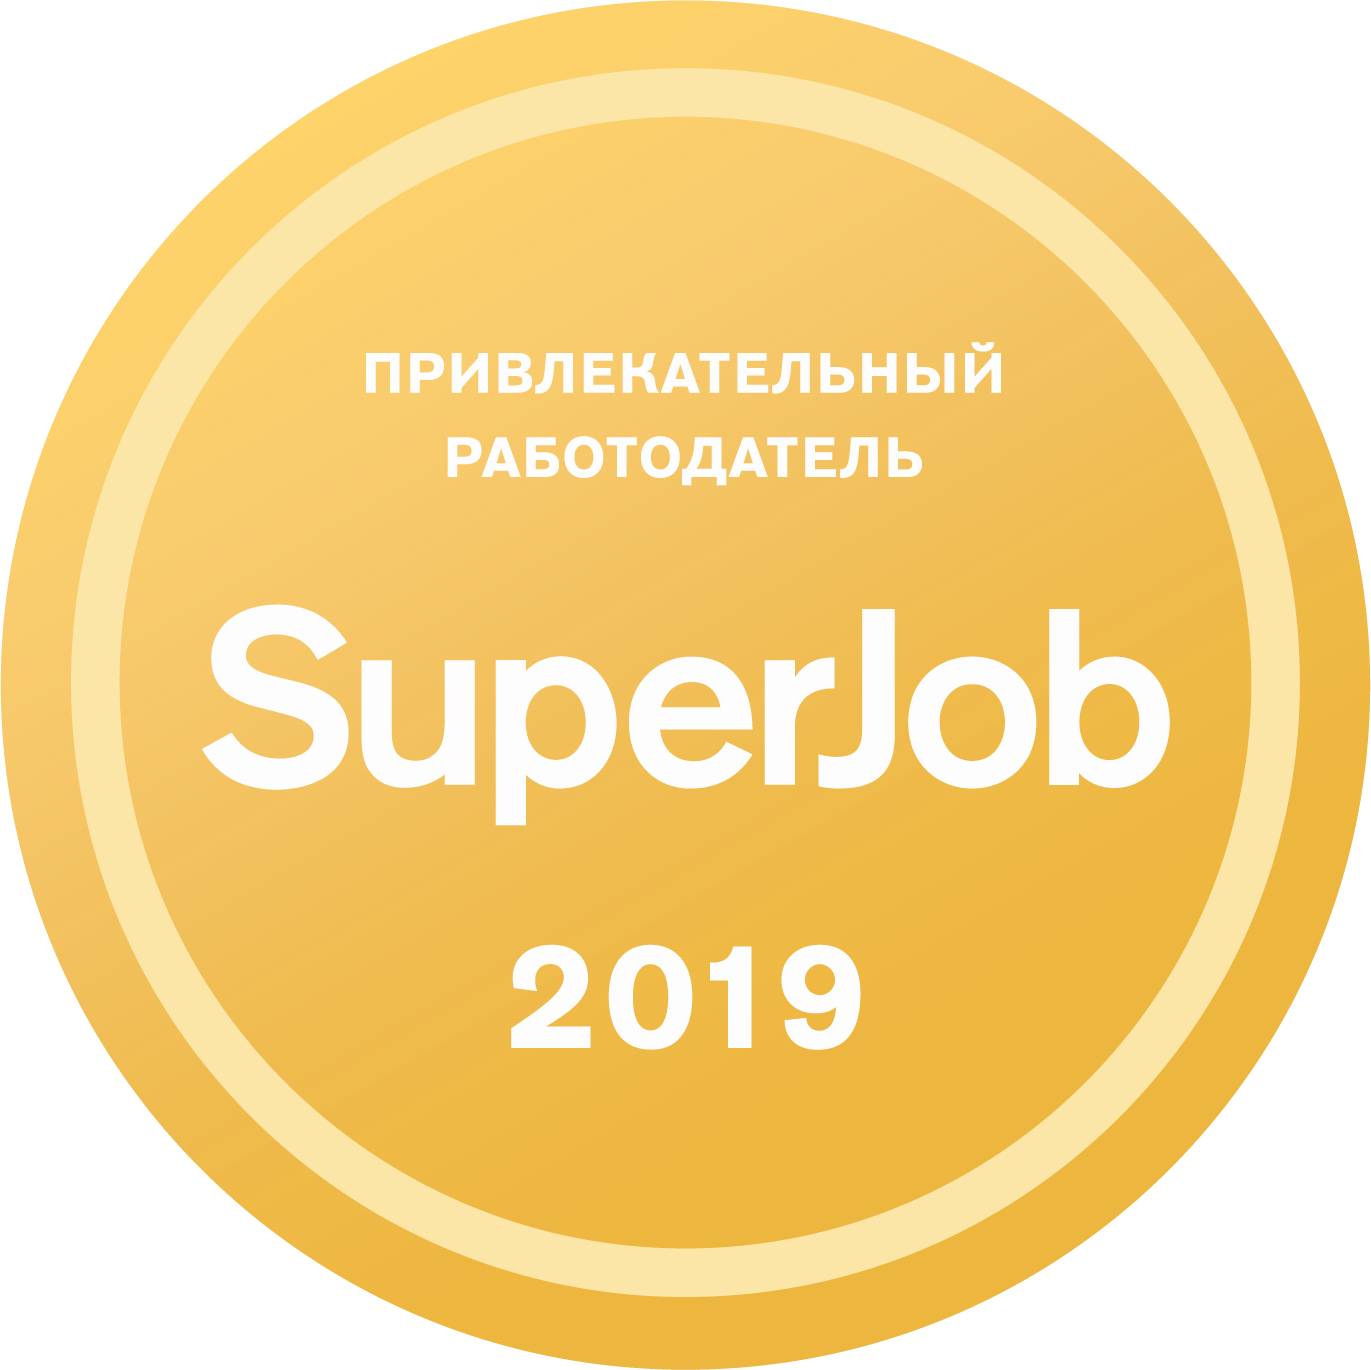 Репропарк - привлекательный работодатель по версии SuperJob